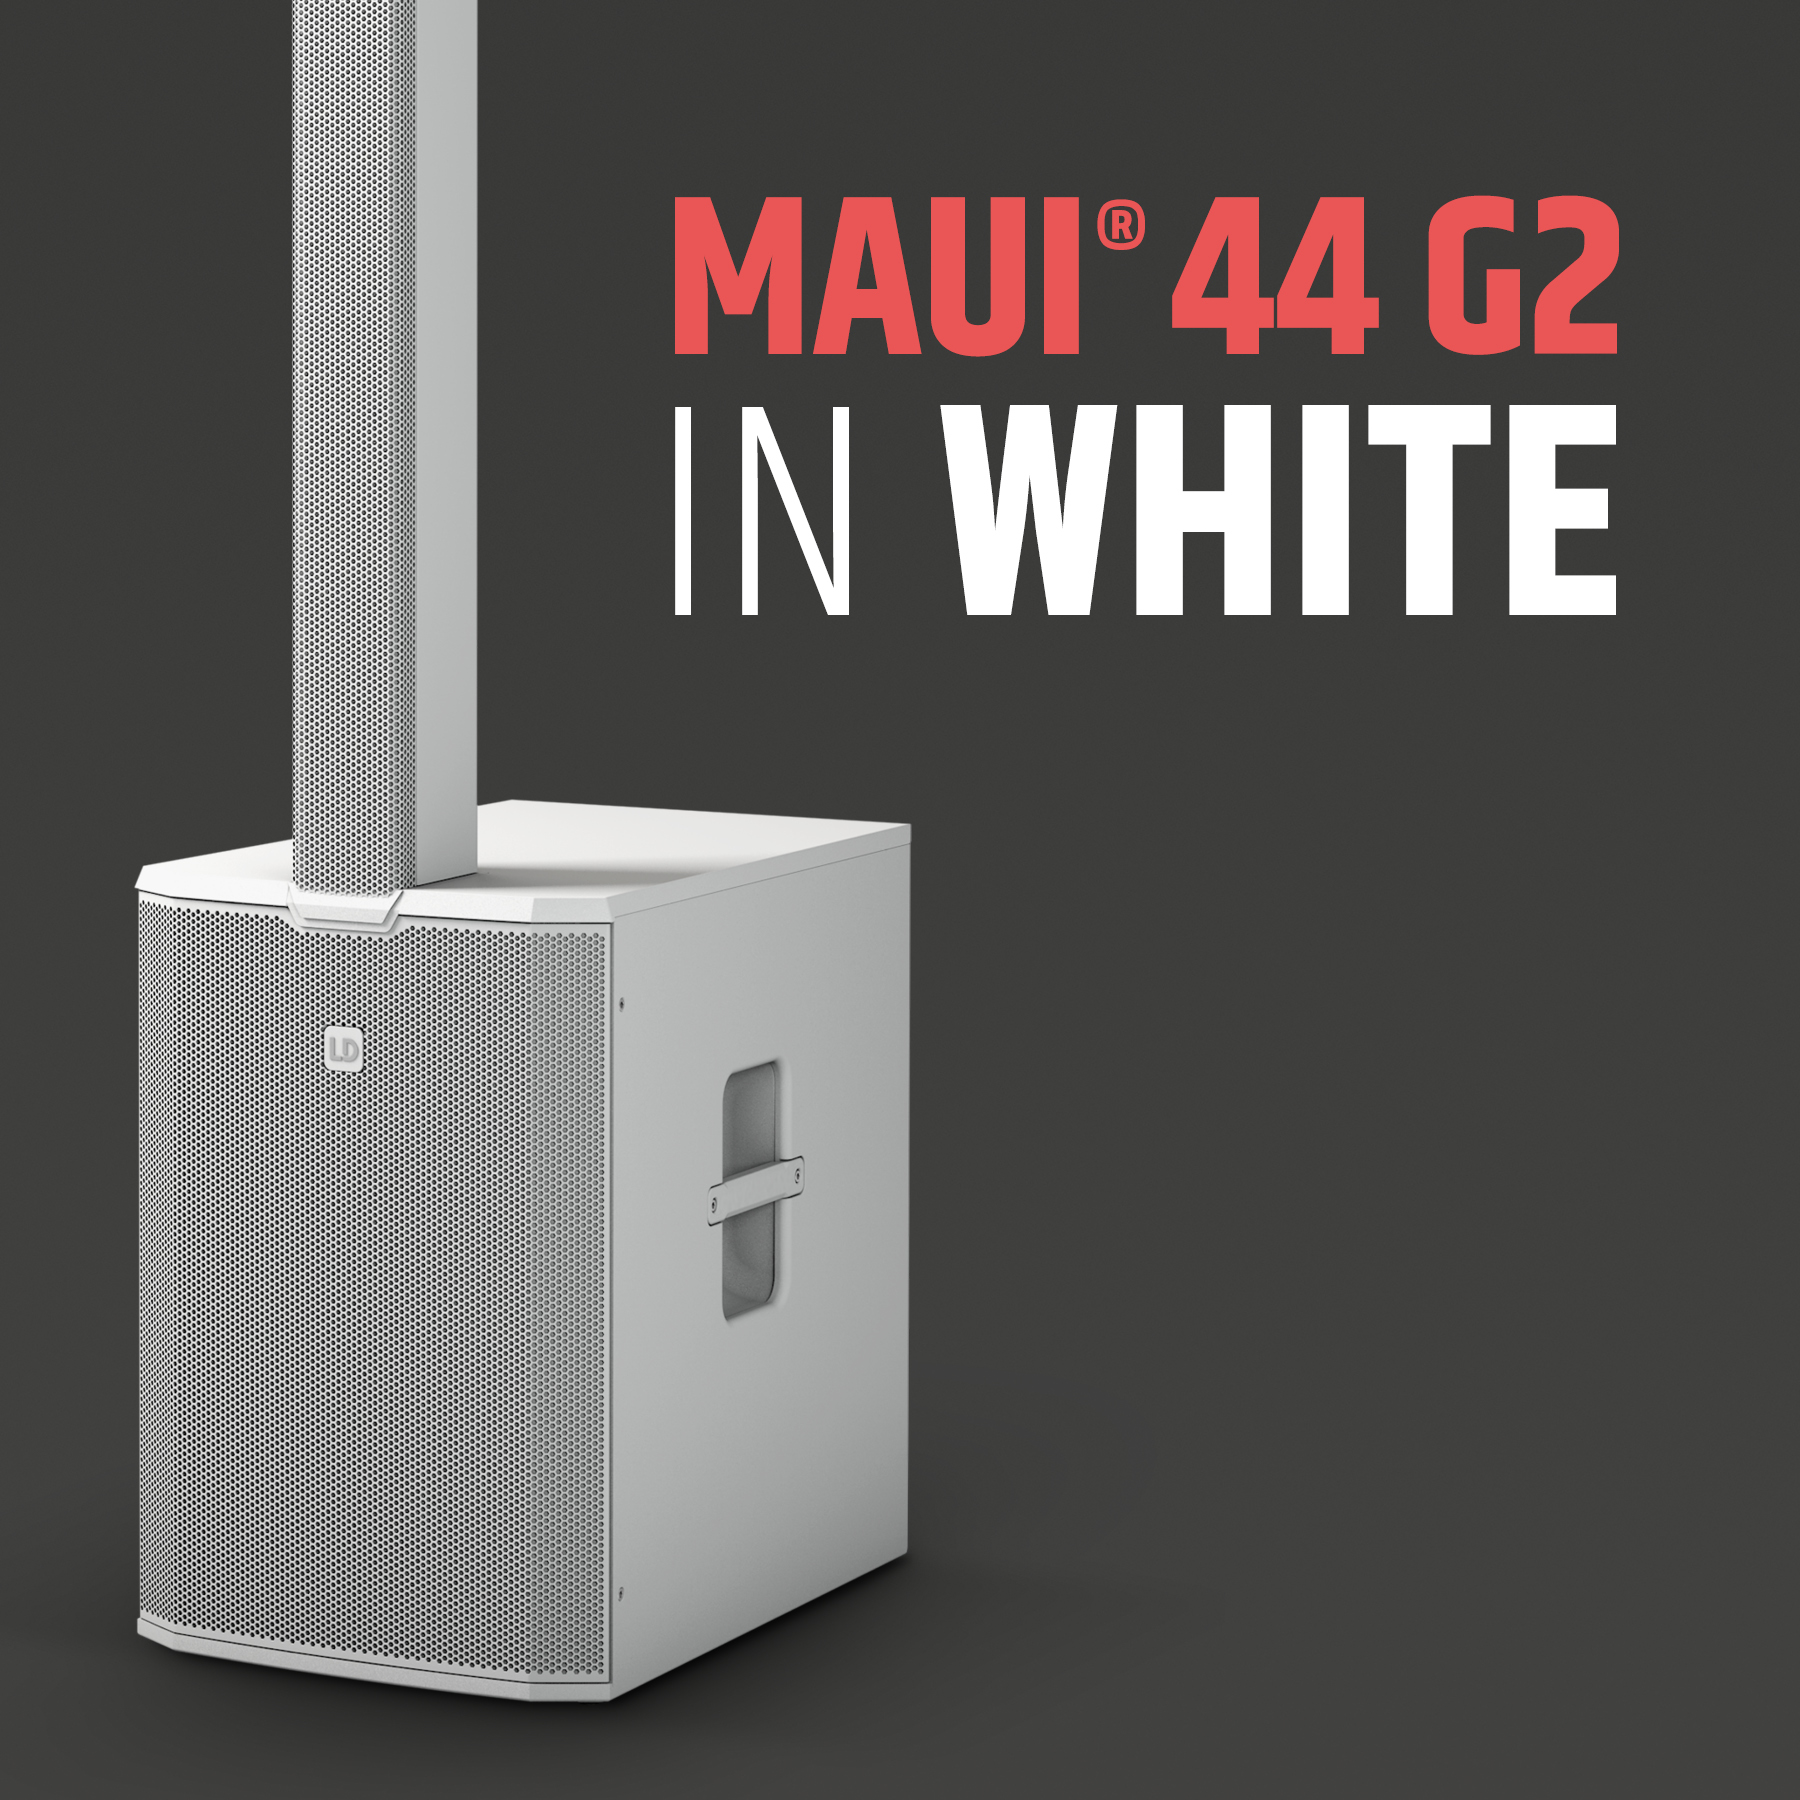 MAUI® 44 G2 W